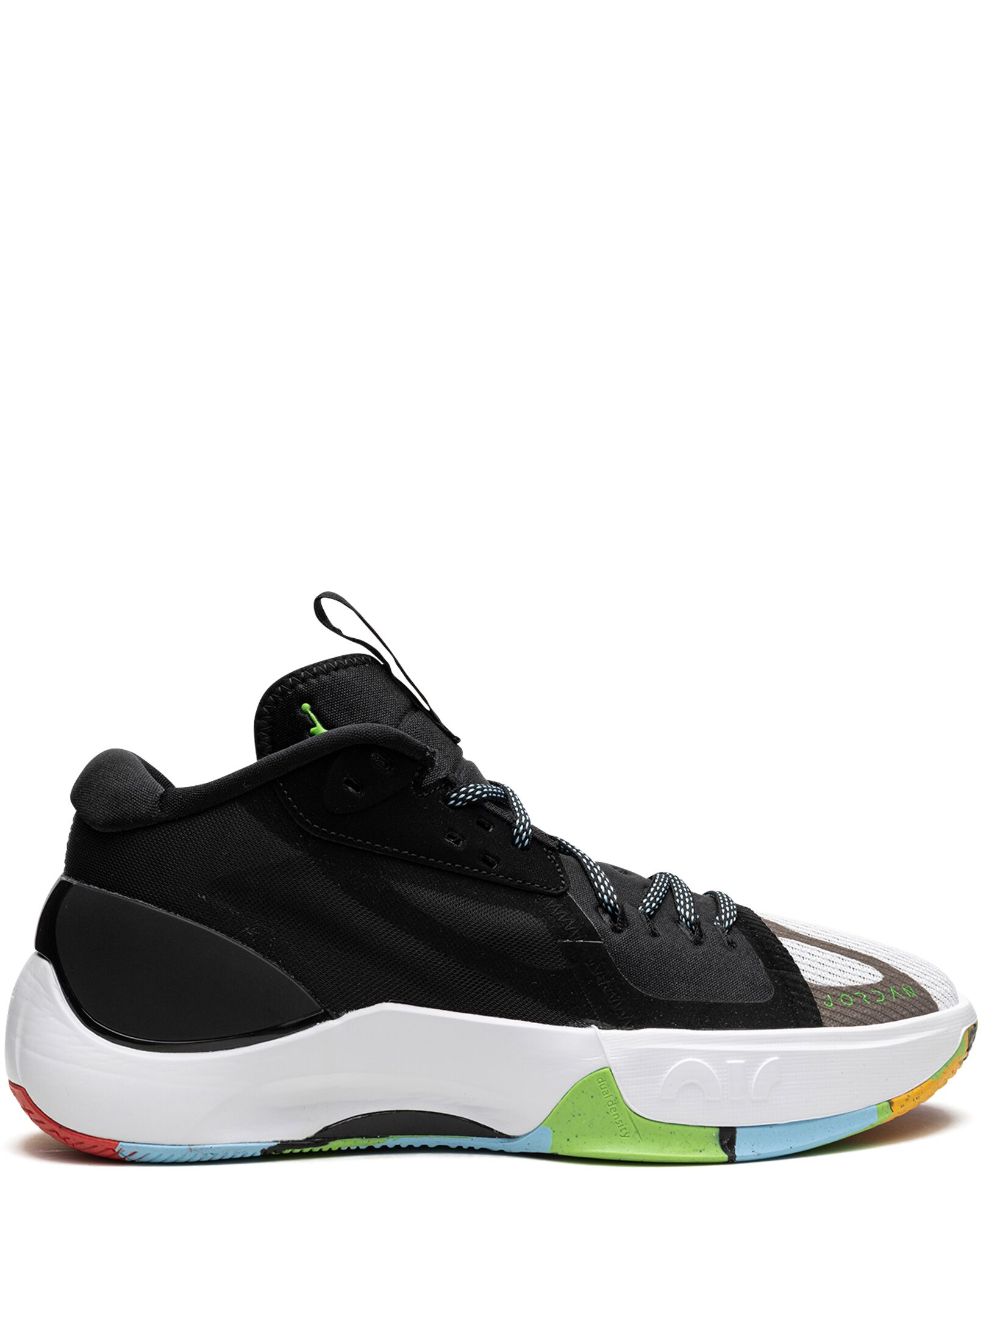 Jordan Air Jordan Zoom Separate "Multicolor" sneakers - Black